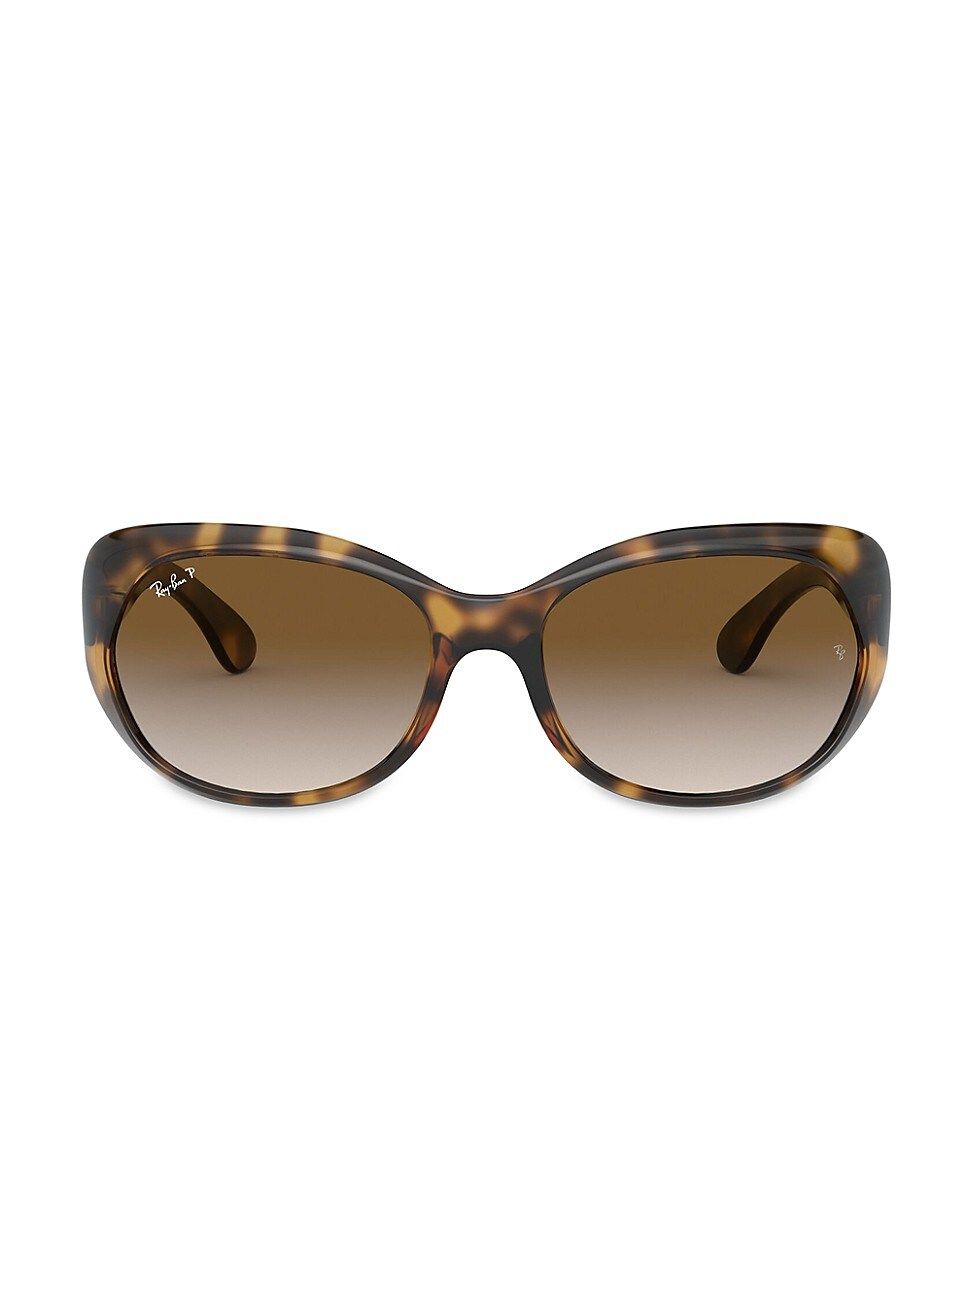 Women's RB4325 59MM Butterfly Sunglasses - Havana | Saks Fifth Avenue